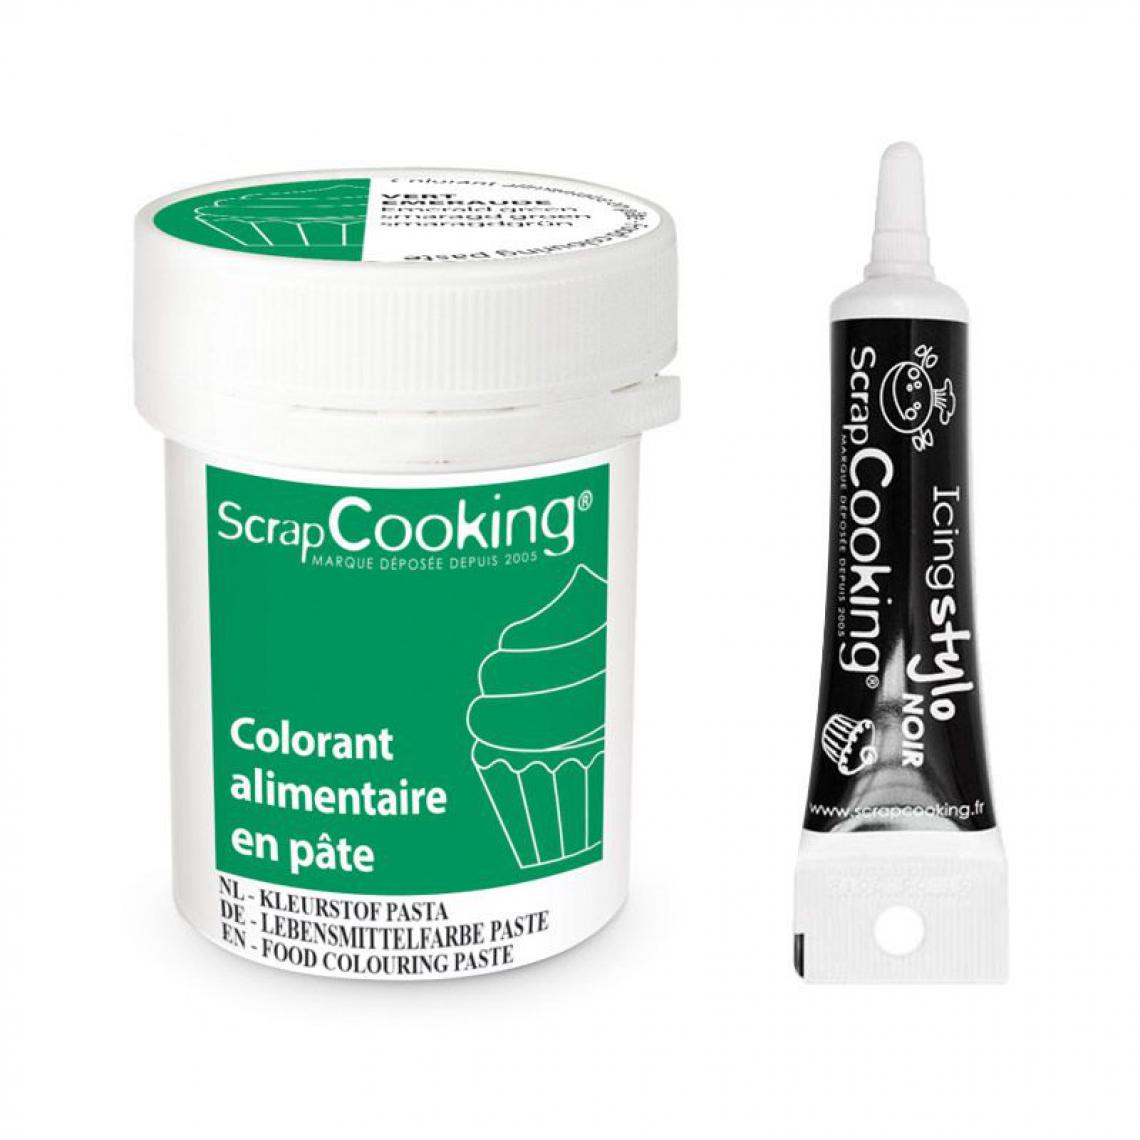 Scrapcooking - Colorant alimentaire en pâte 20 g Vert émeraude + Stylo de glaçage noir - Kits créatifs